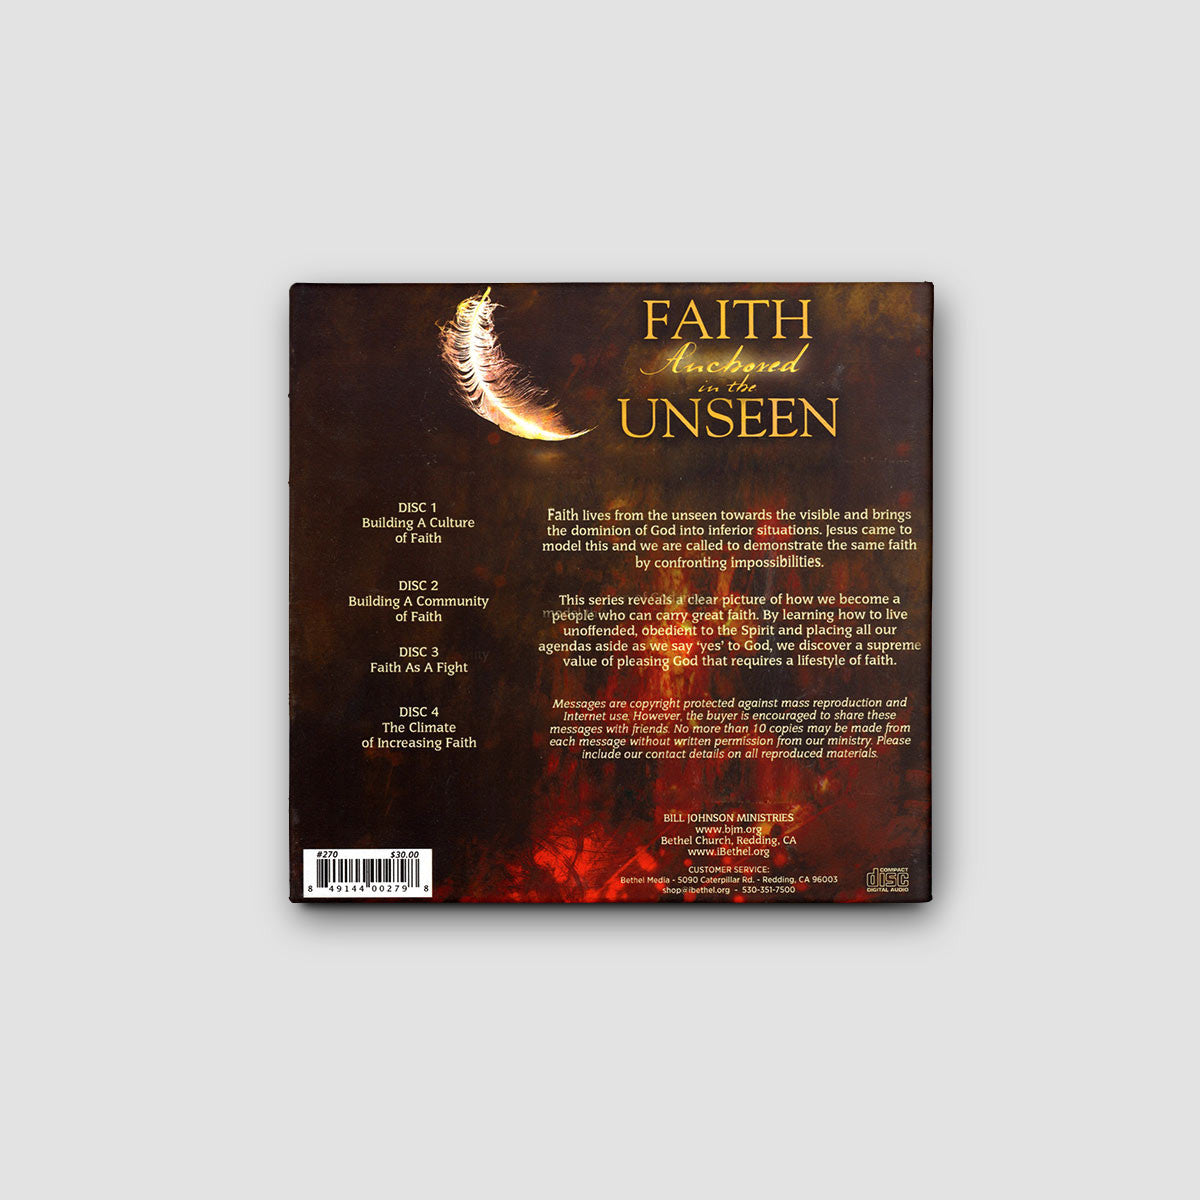 Faith Anchored in the Unseen